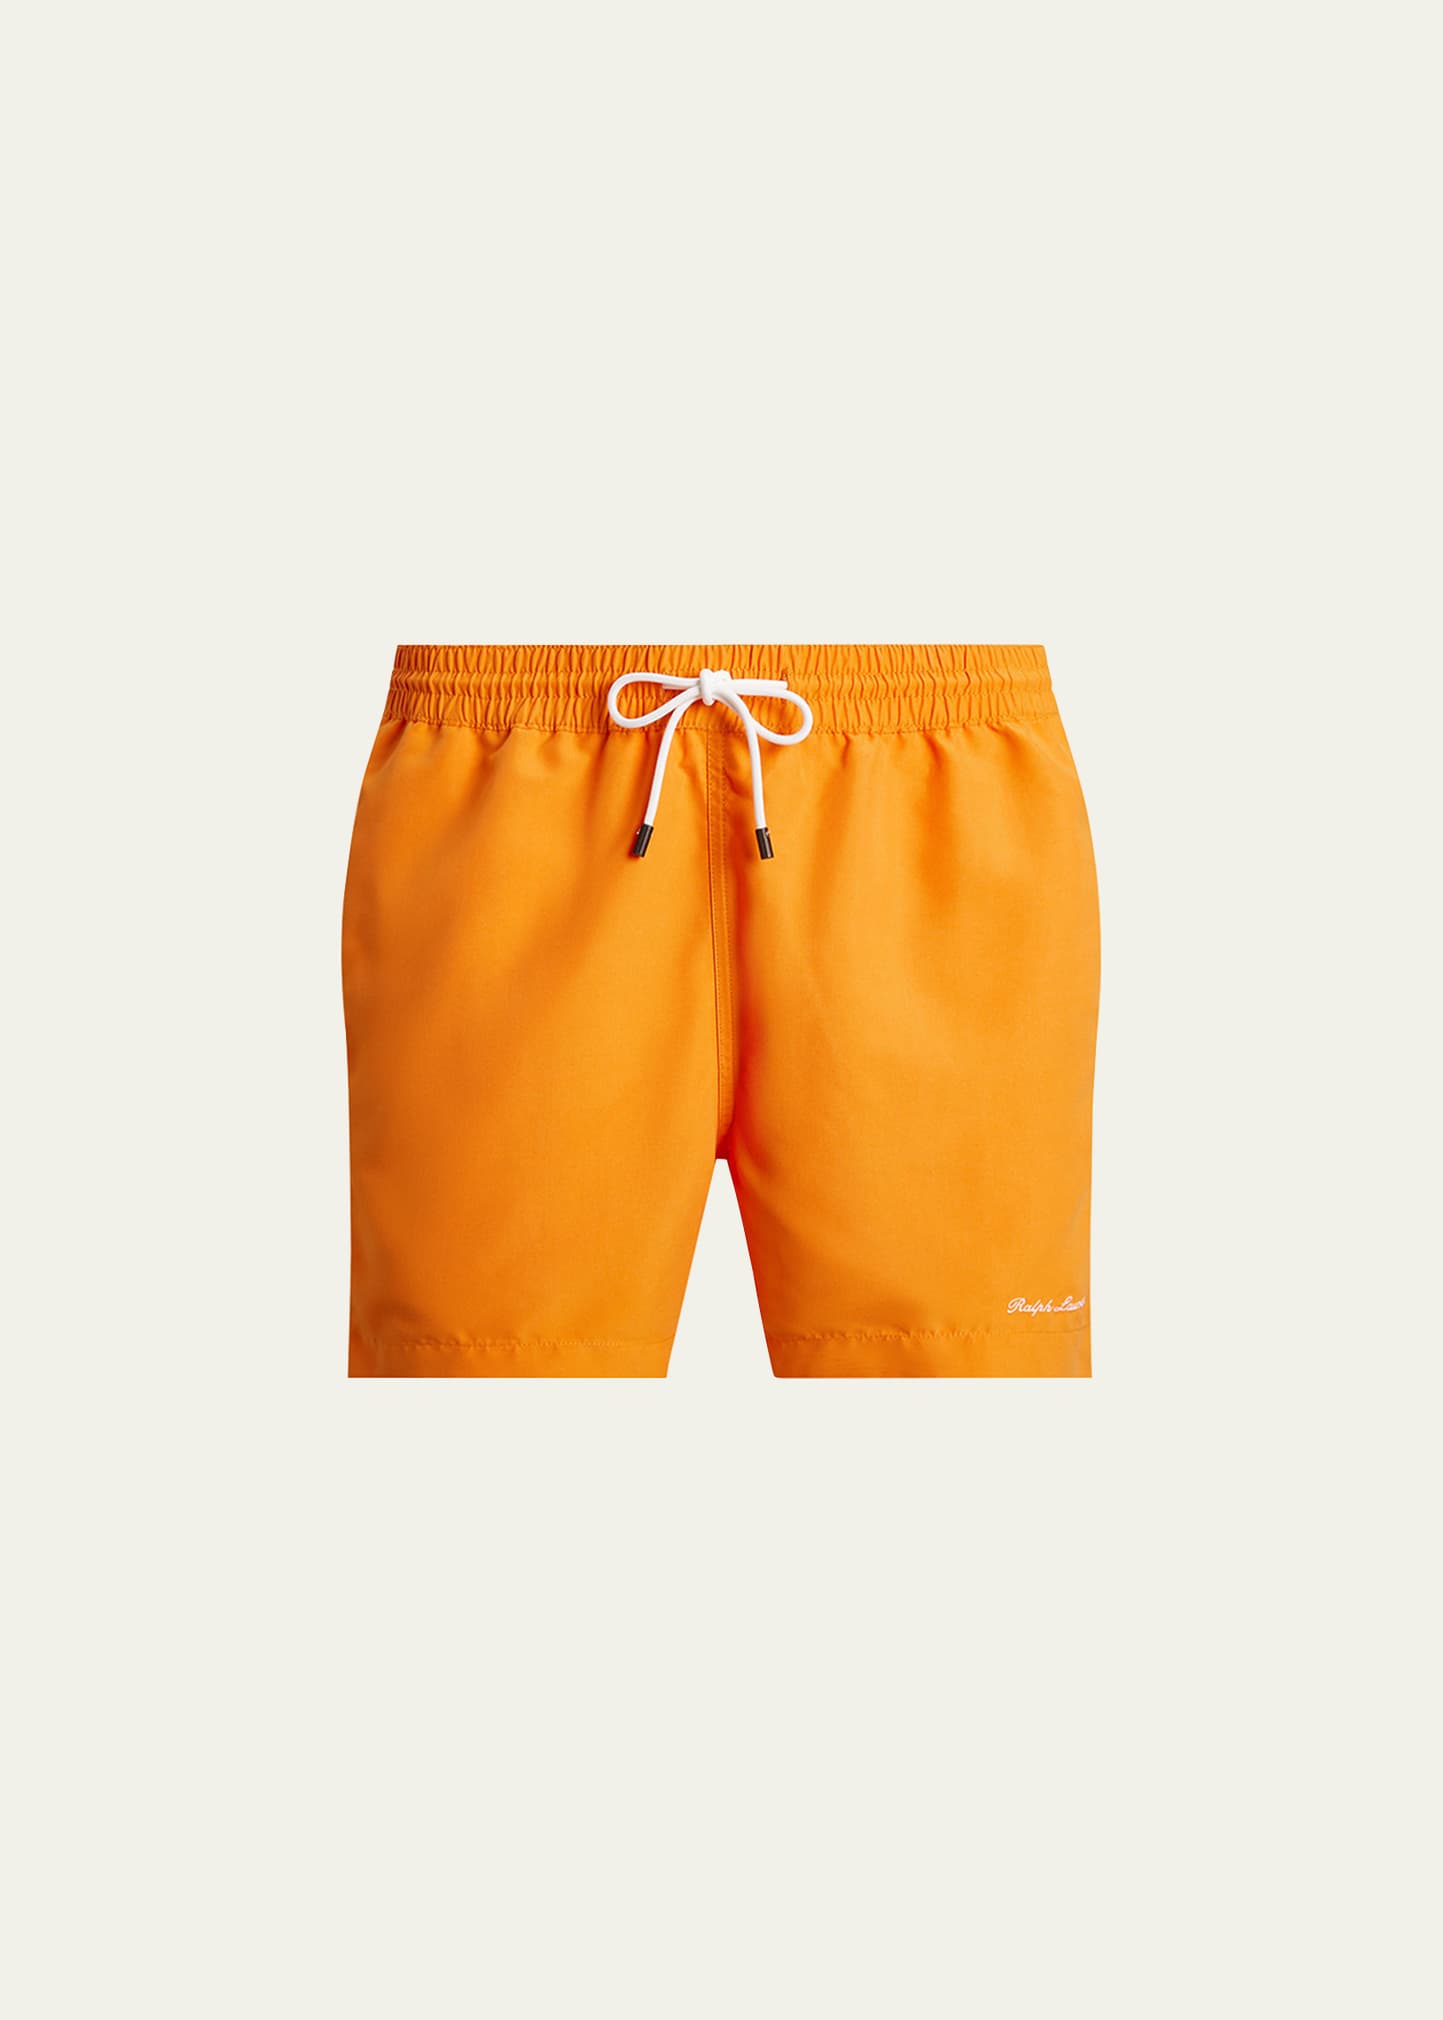 $210 Purple Brand Men's Green Jumbo Monogram Swim Shorts Size